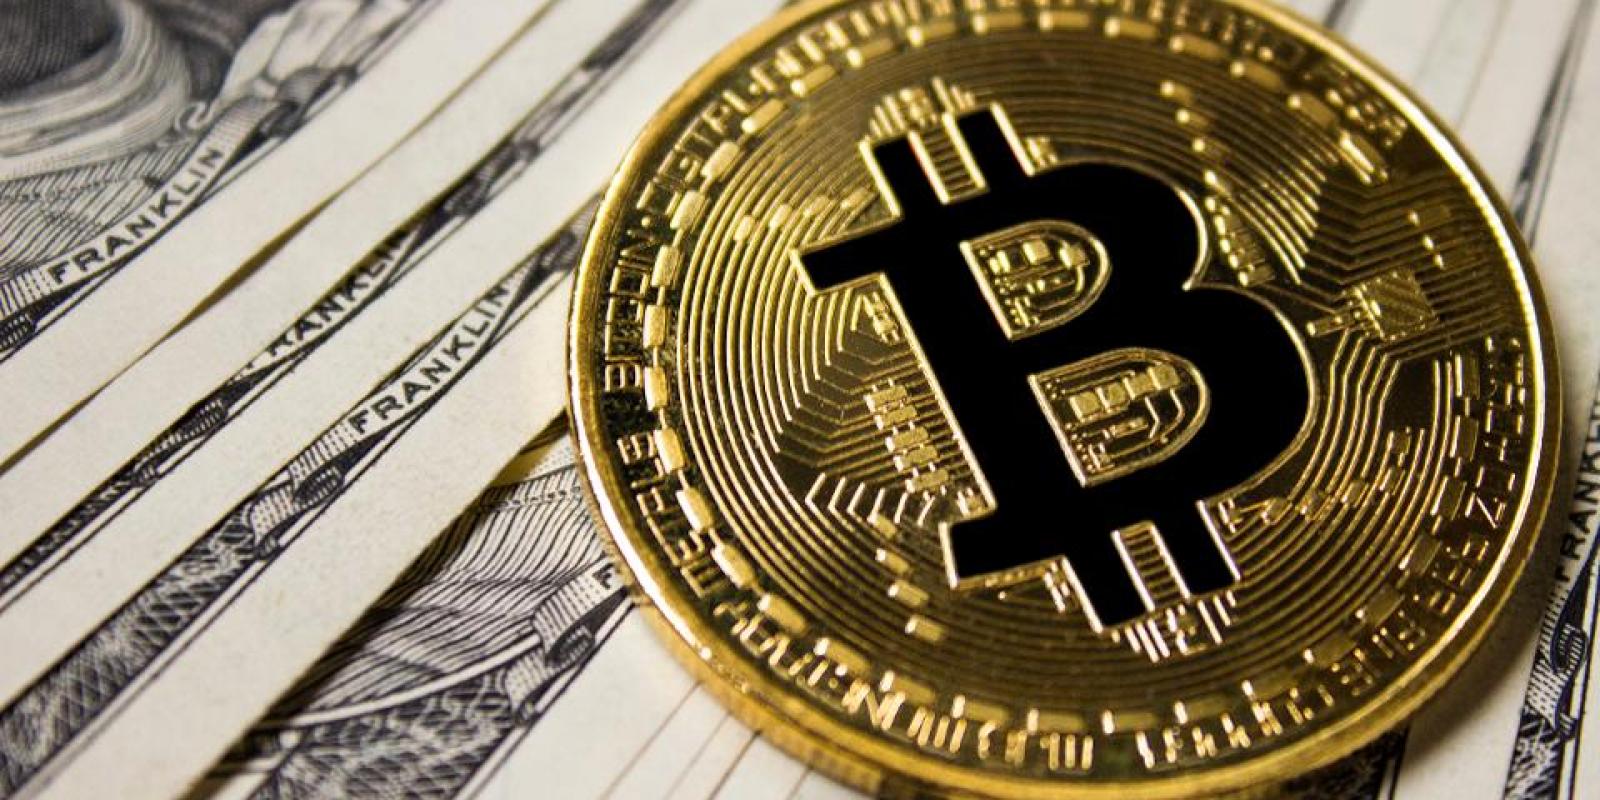 Le Bitcoin : tout savoir avant de l’acheter